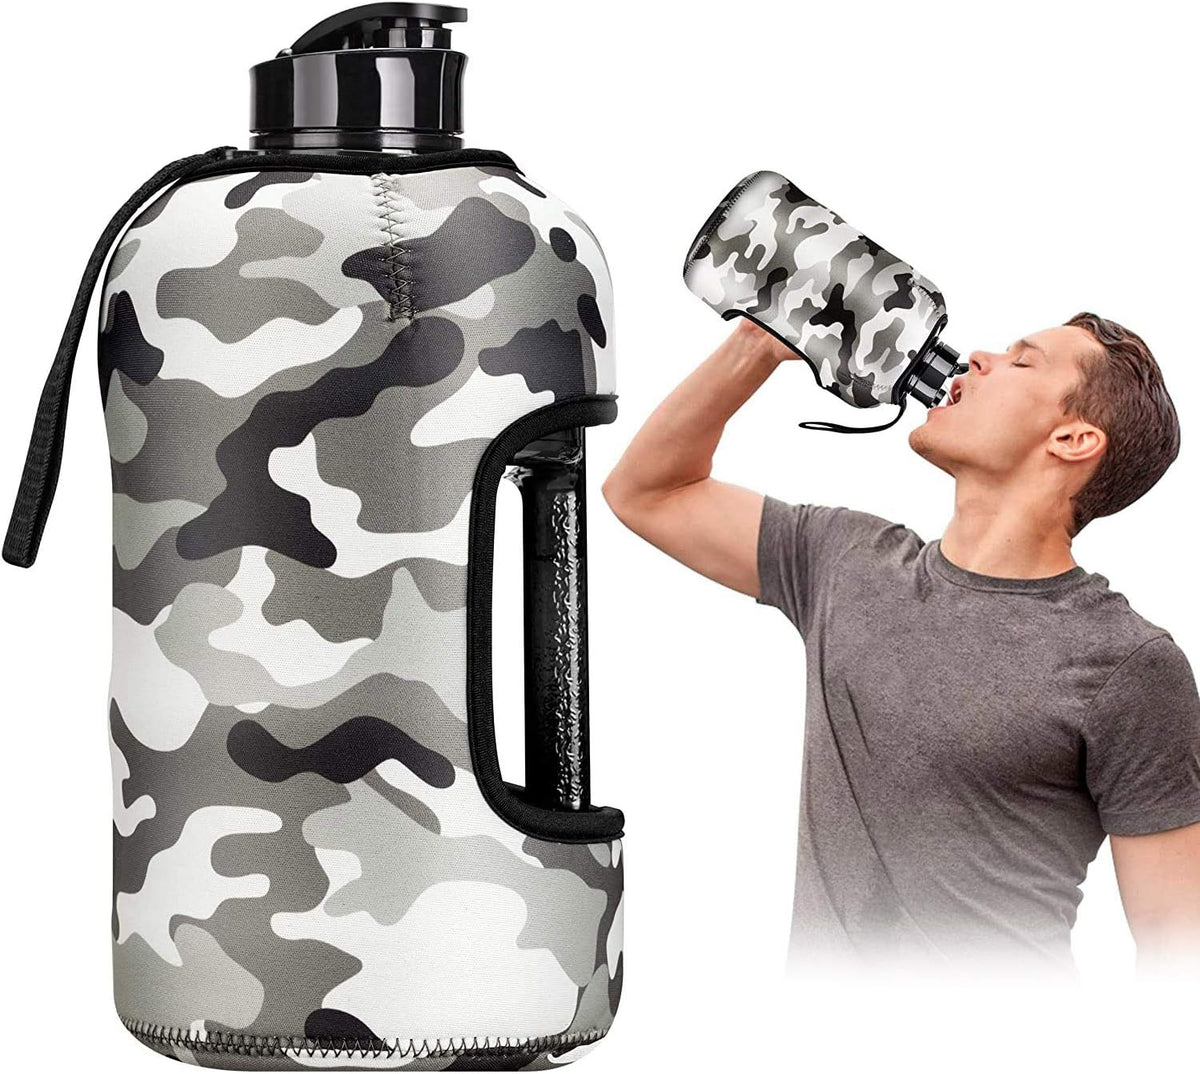 Cheap sport water bottles